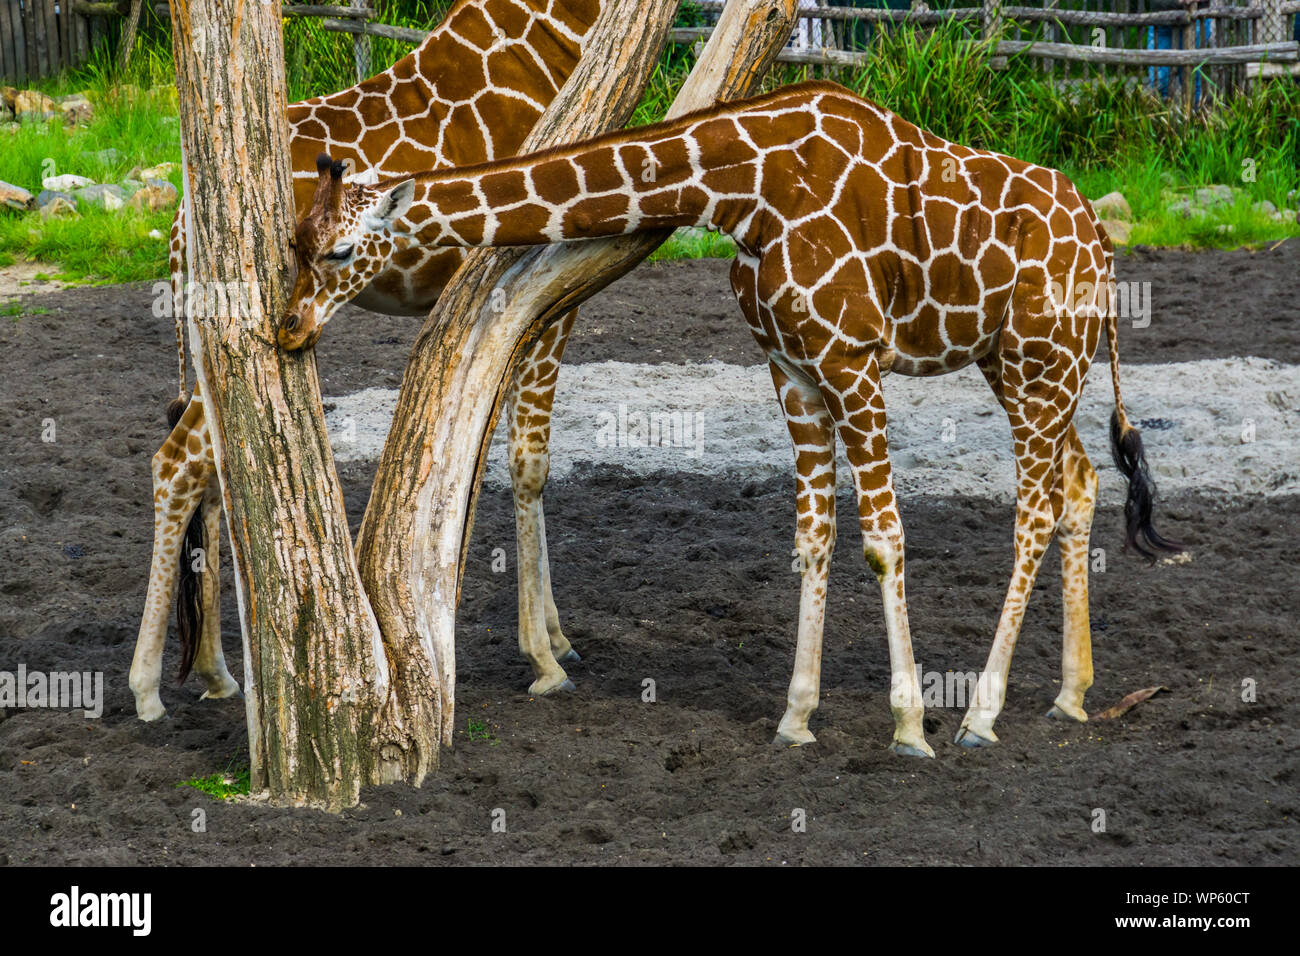 Northern giraffe strofinando la sua testa contro un tronco di albero, vulnerabile specie animale dall'Africa Foto Stock